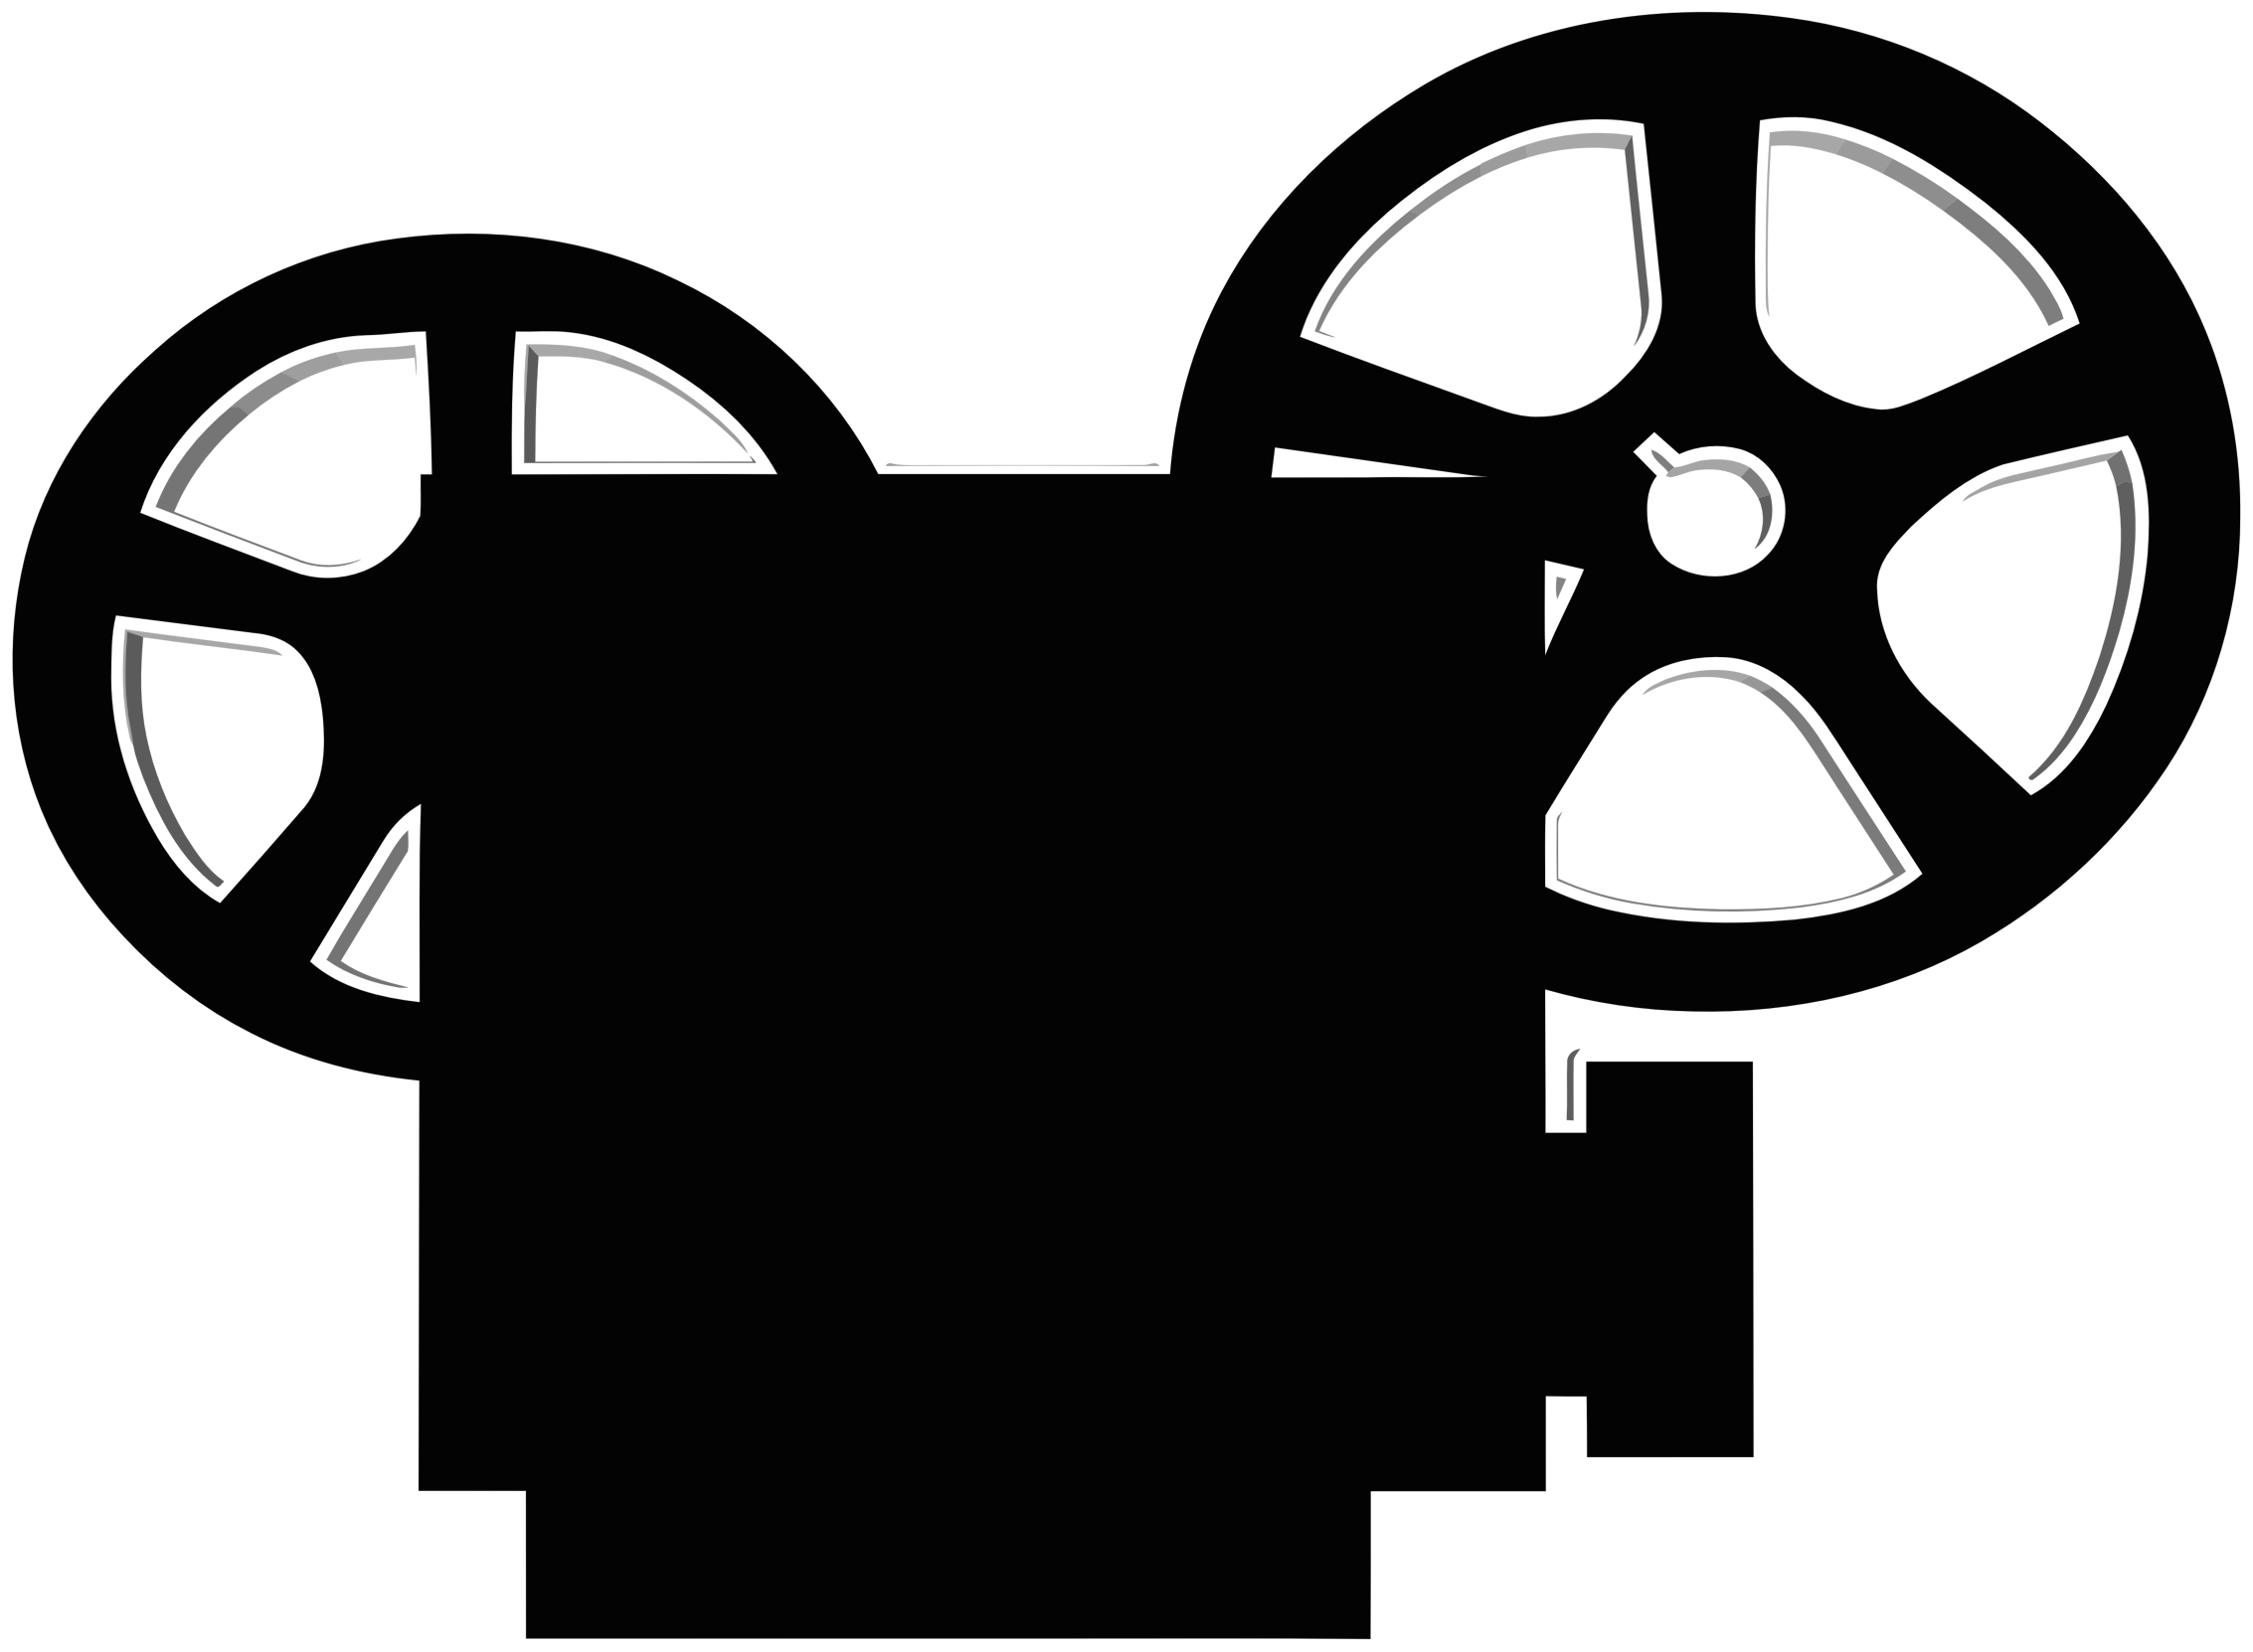 Screen clip art projector. Movie clipart click